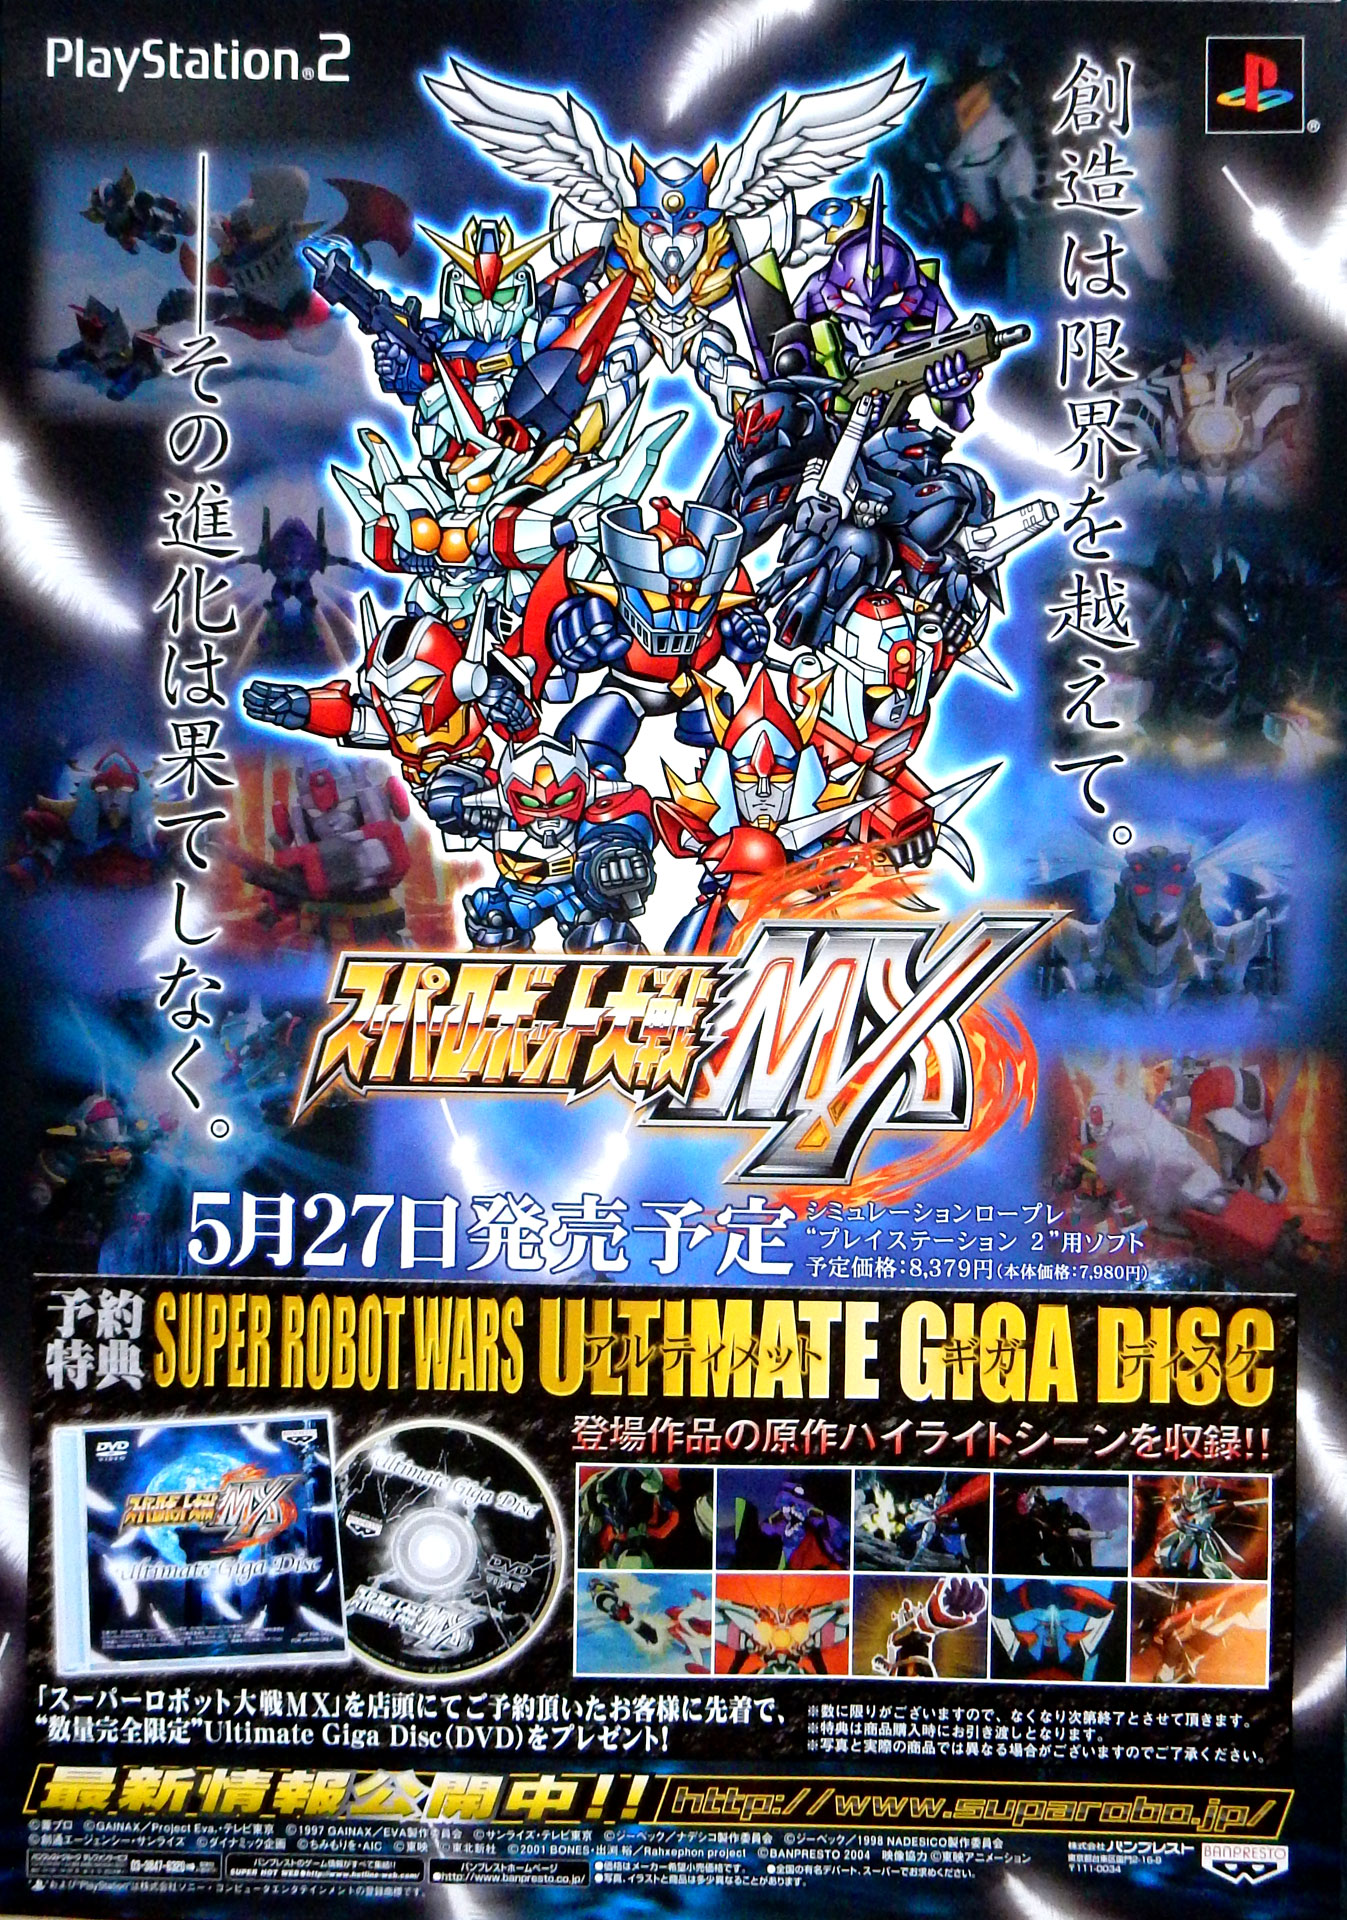 スーパーロボット大戦MX PS2  発売予定 告知のポスター